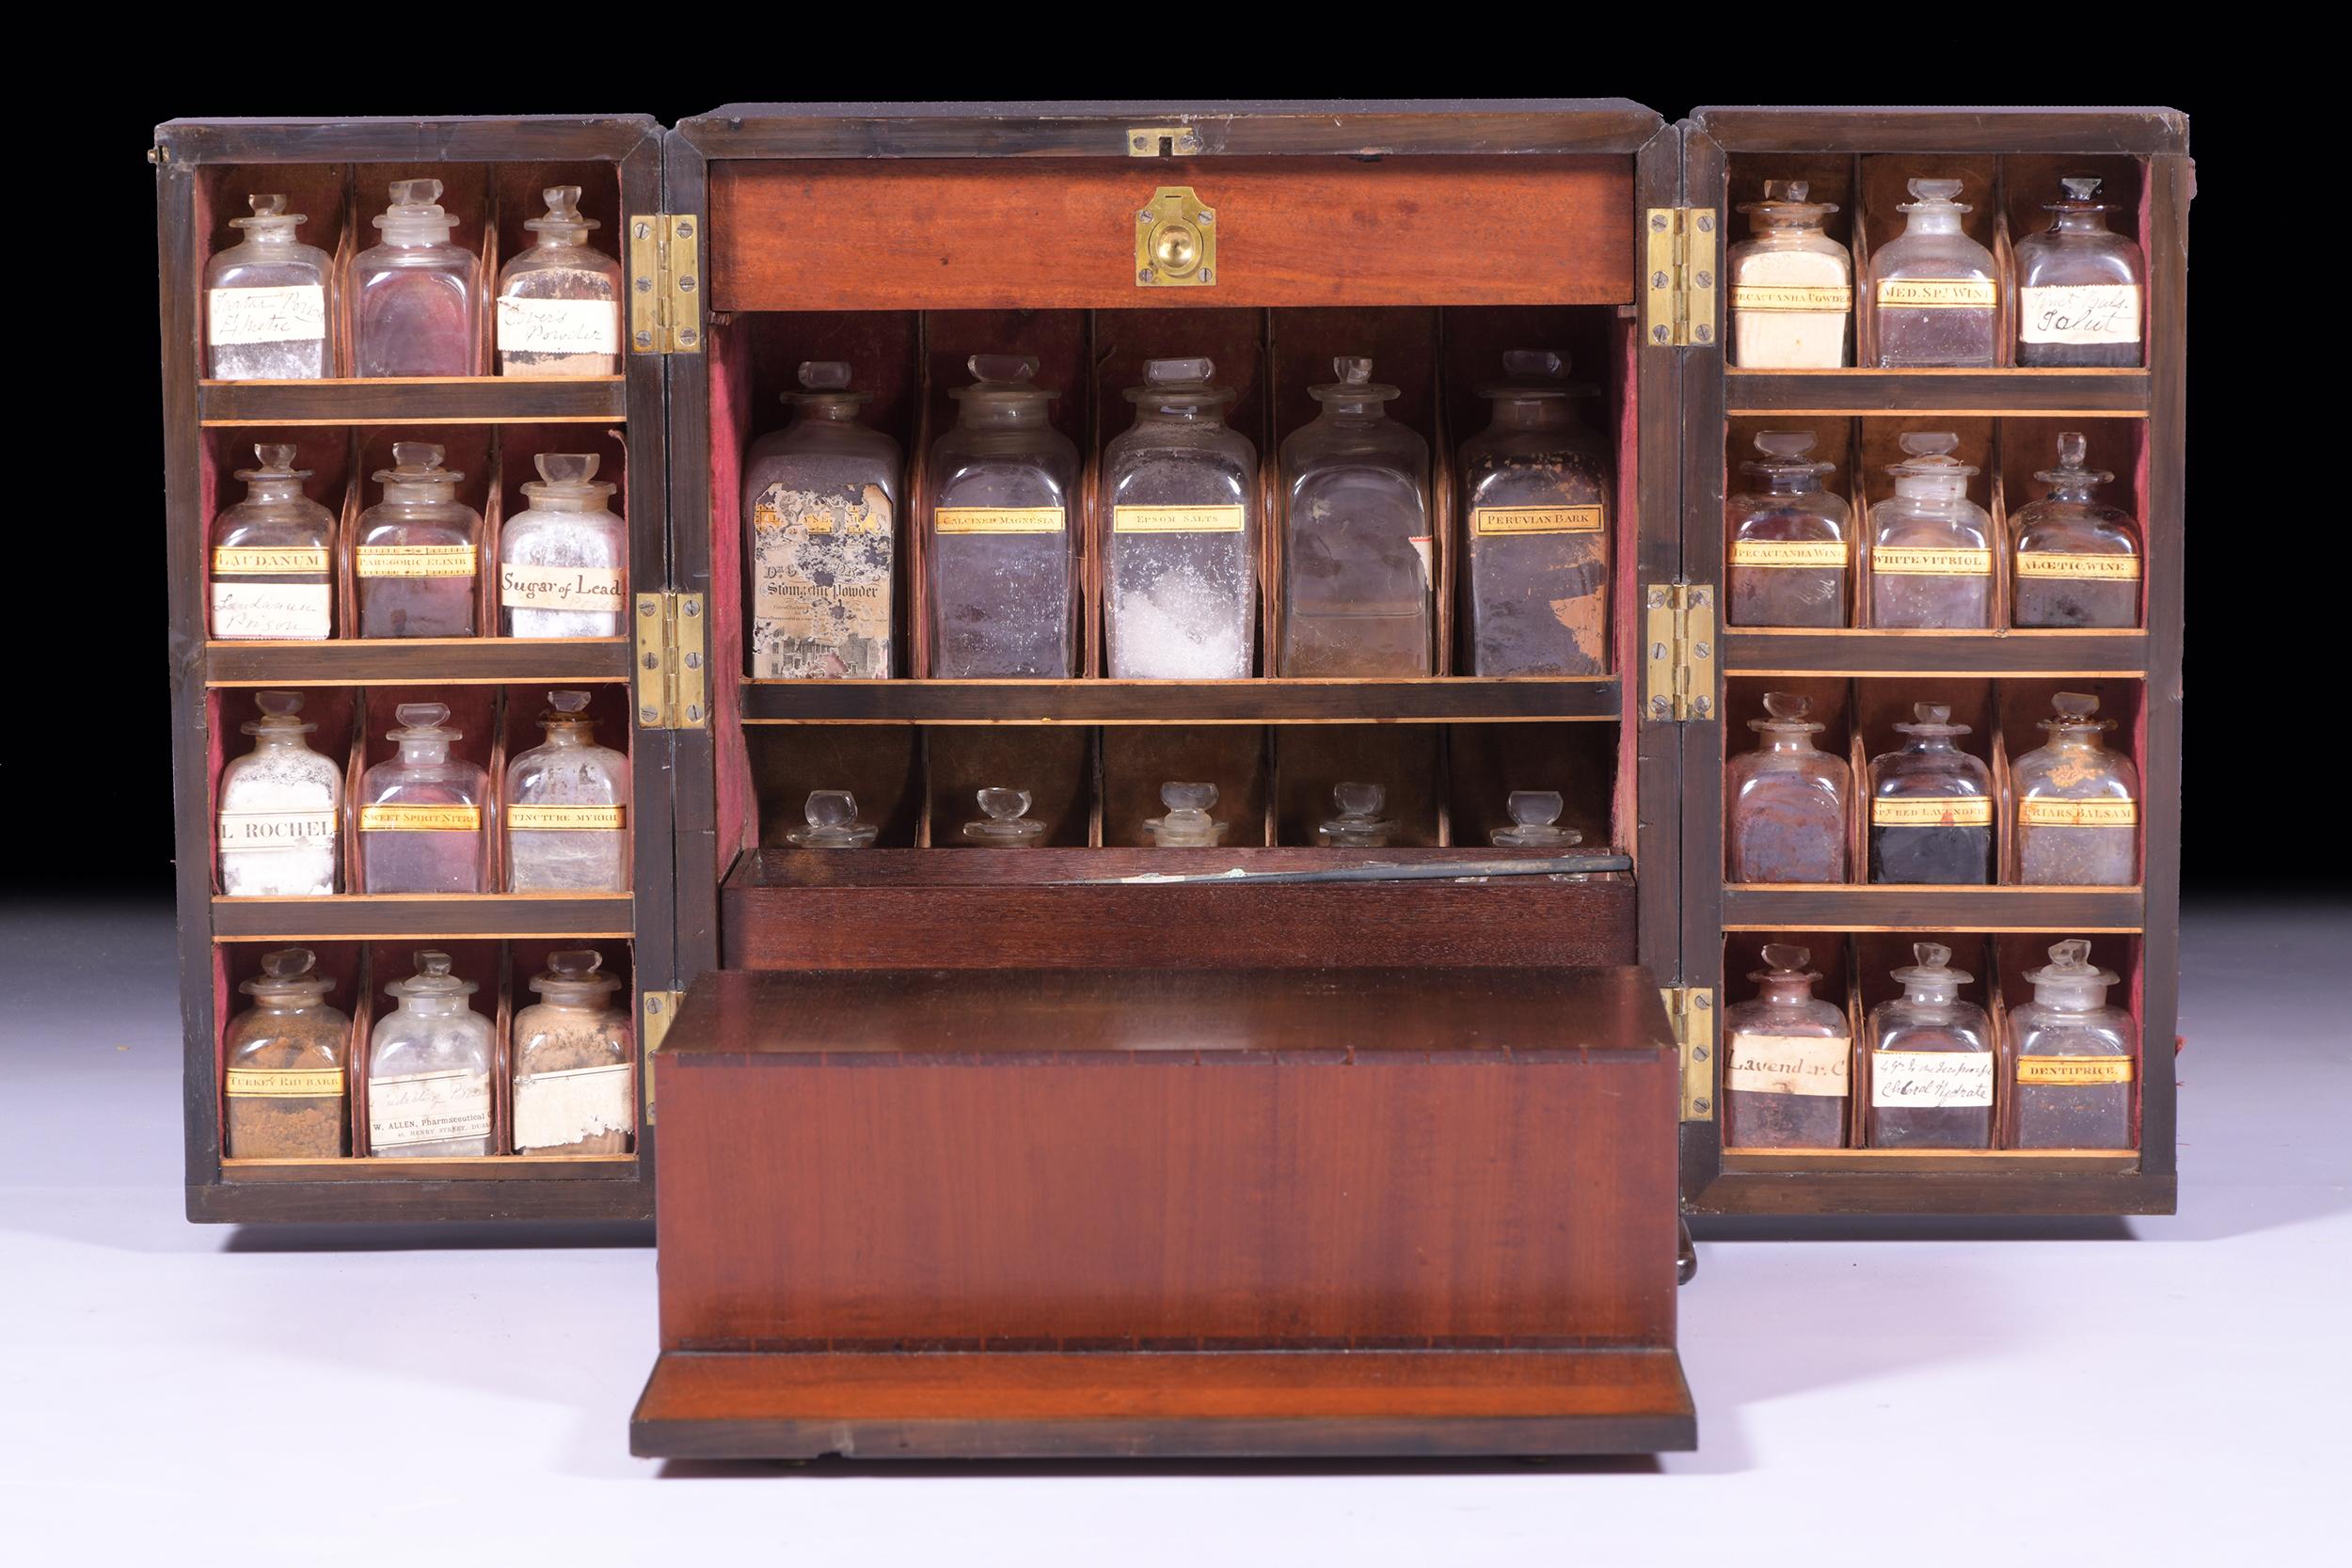 Exceptionnelle armoire à pharmacie en acajou du début du 19e siècle, avec des poignées en laiton de chaque côté, qui s'ouvre par les doubles portes pour révéler un arrangement de bouteilles, avec des étiquettes et leur contenu, des bouteilles